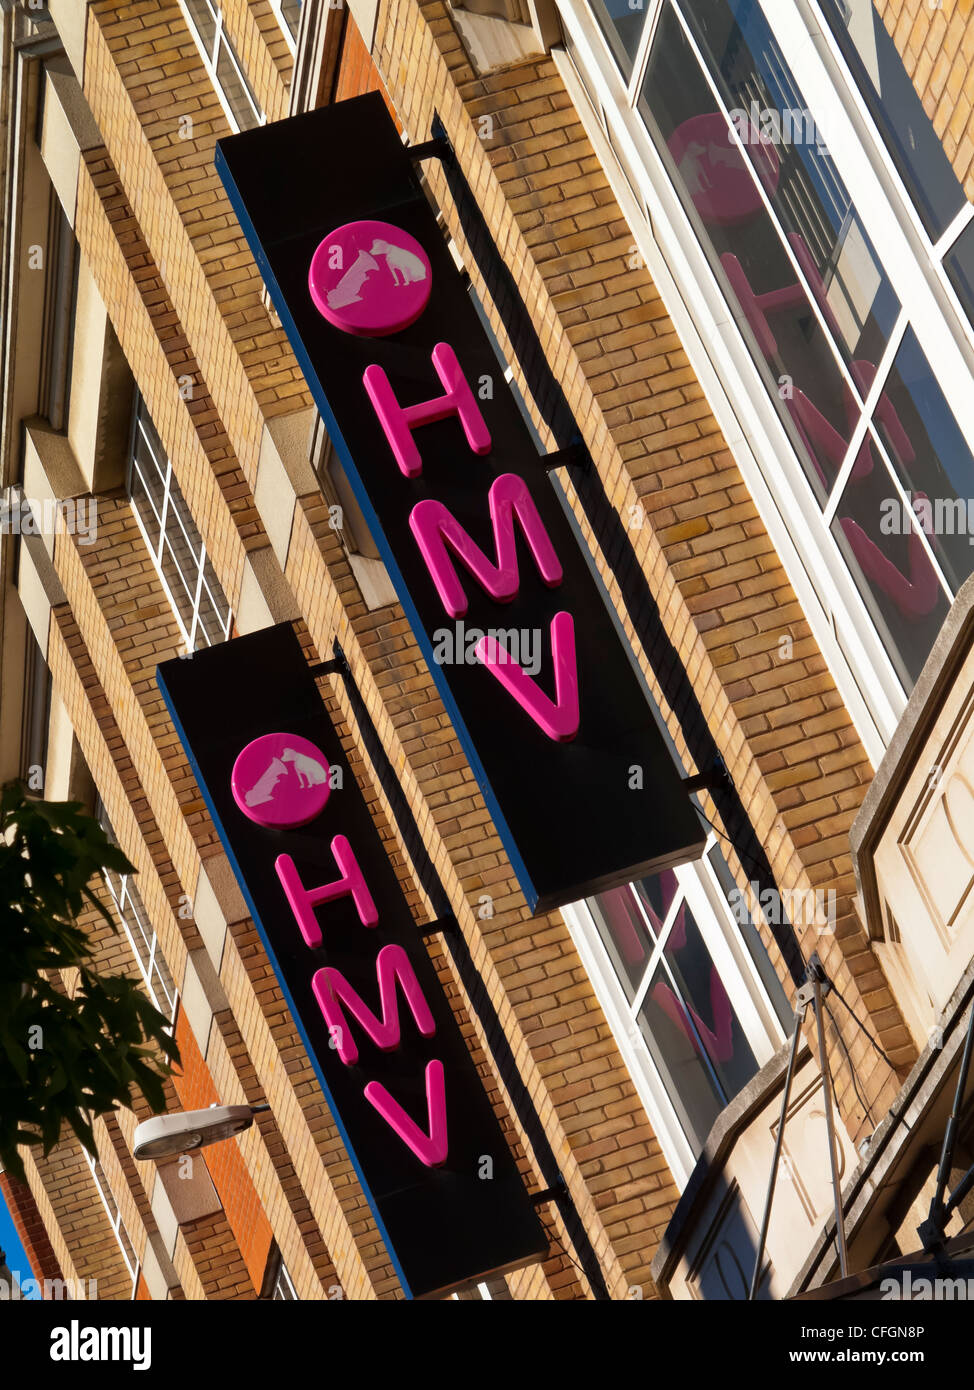 Beschilderung außerhalb HMV shop in Leicester England UK einen britischen High Street Einzelhändler verkaufen Musik Spiele und Entertainment-Produkte Stockfoto